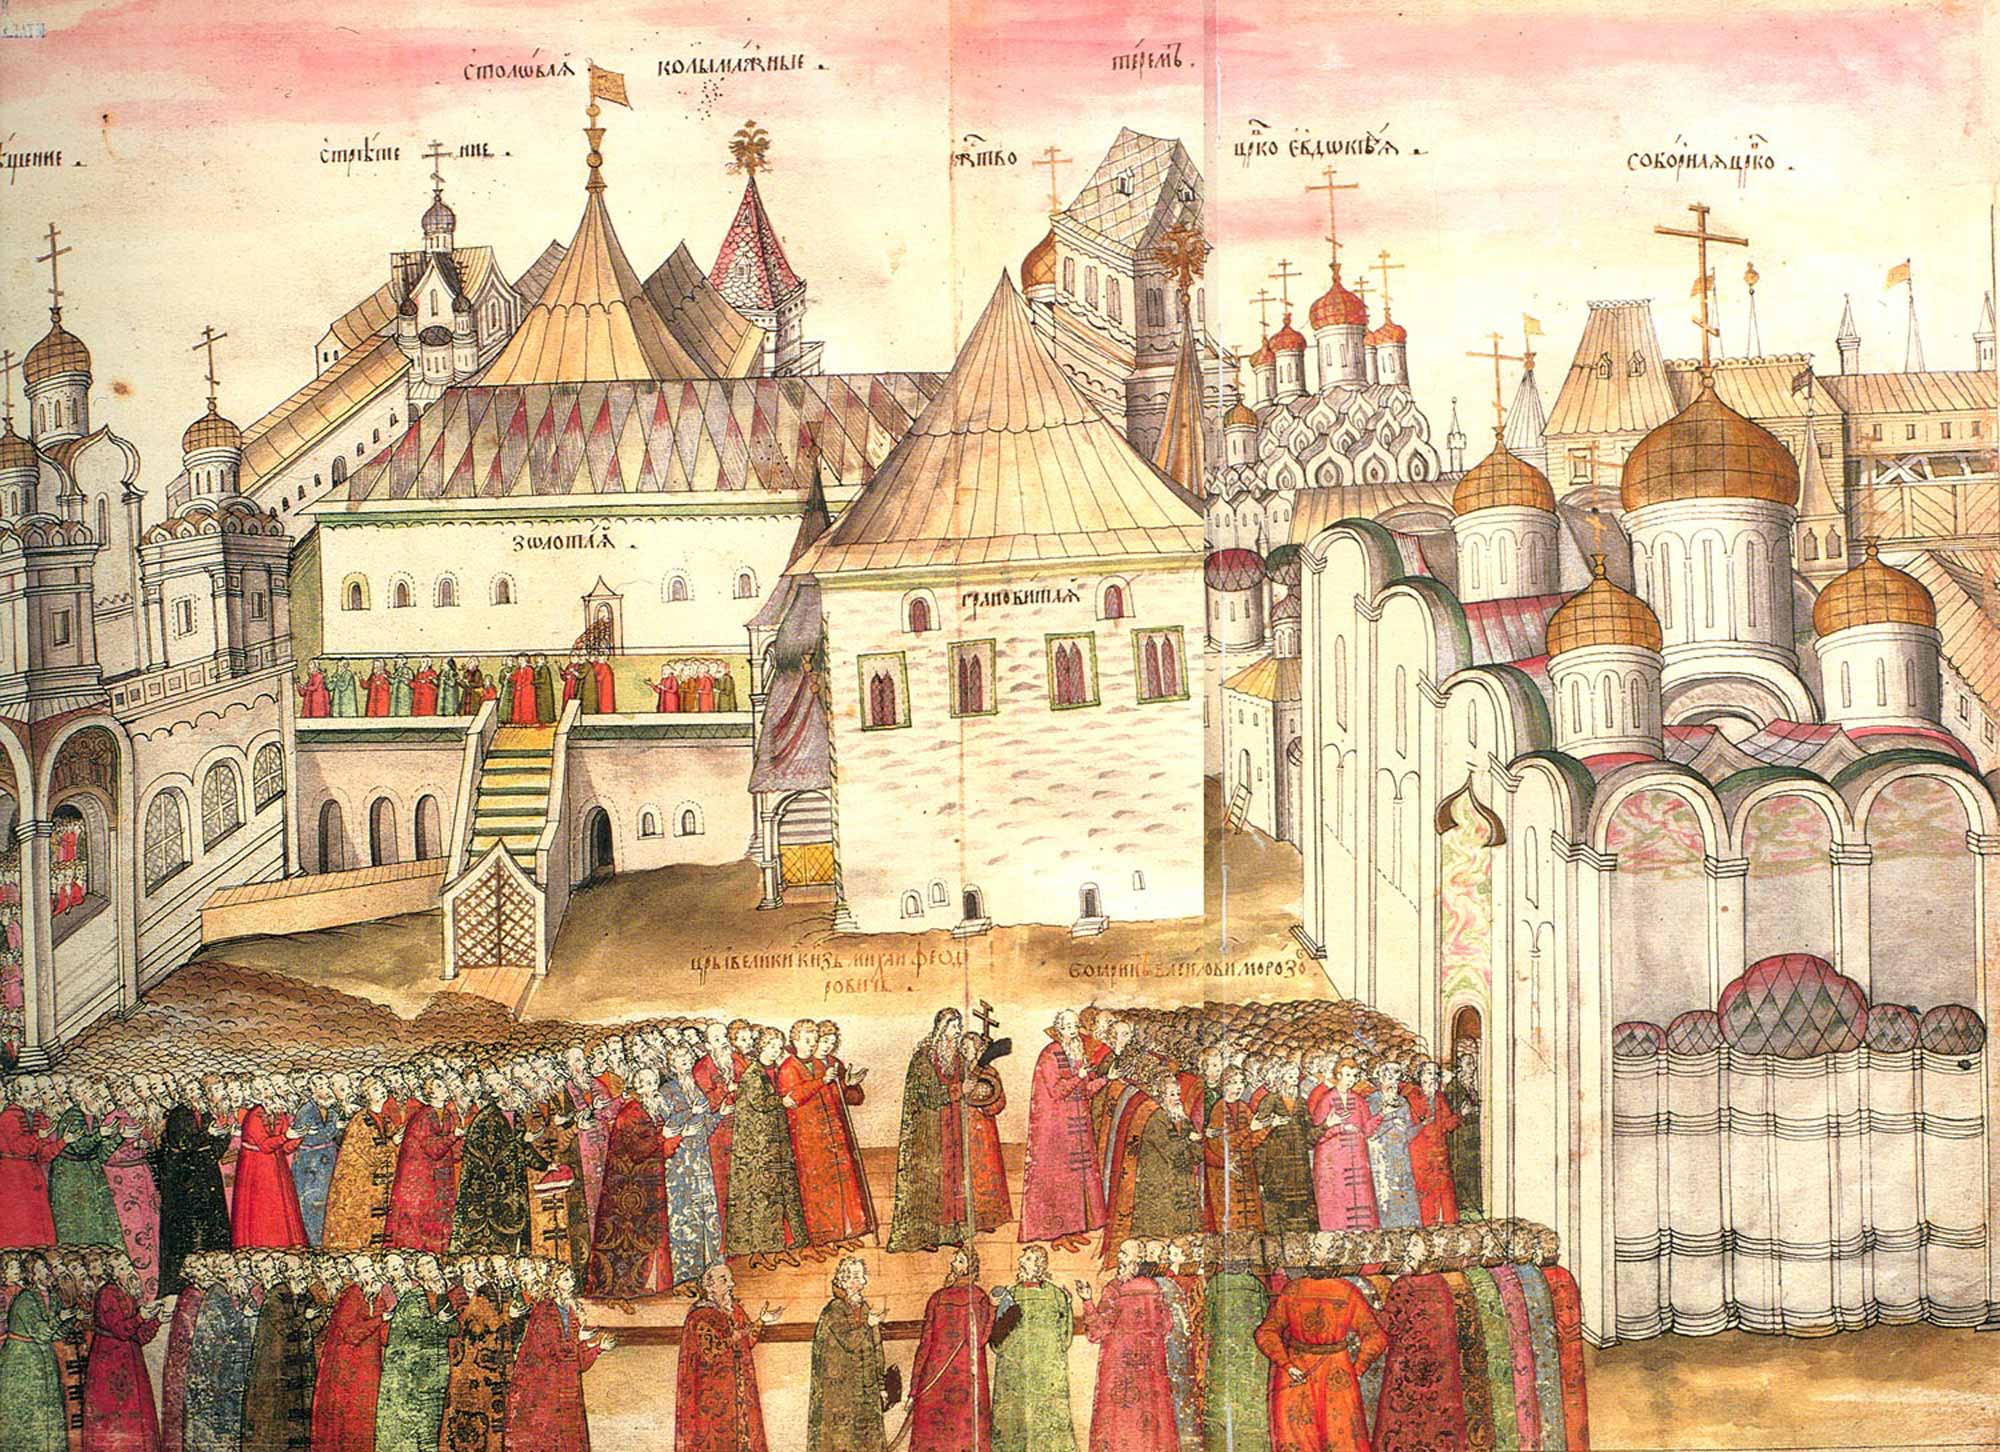 Кремль в книге С. Герберштейна "Записки о московских делах", 1563 год